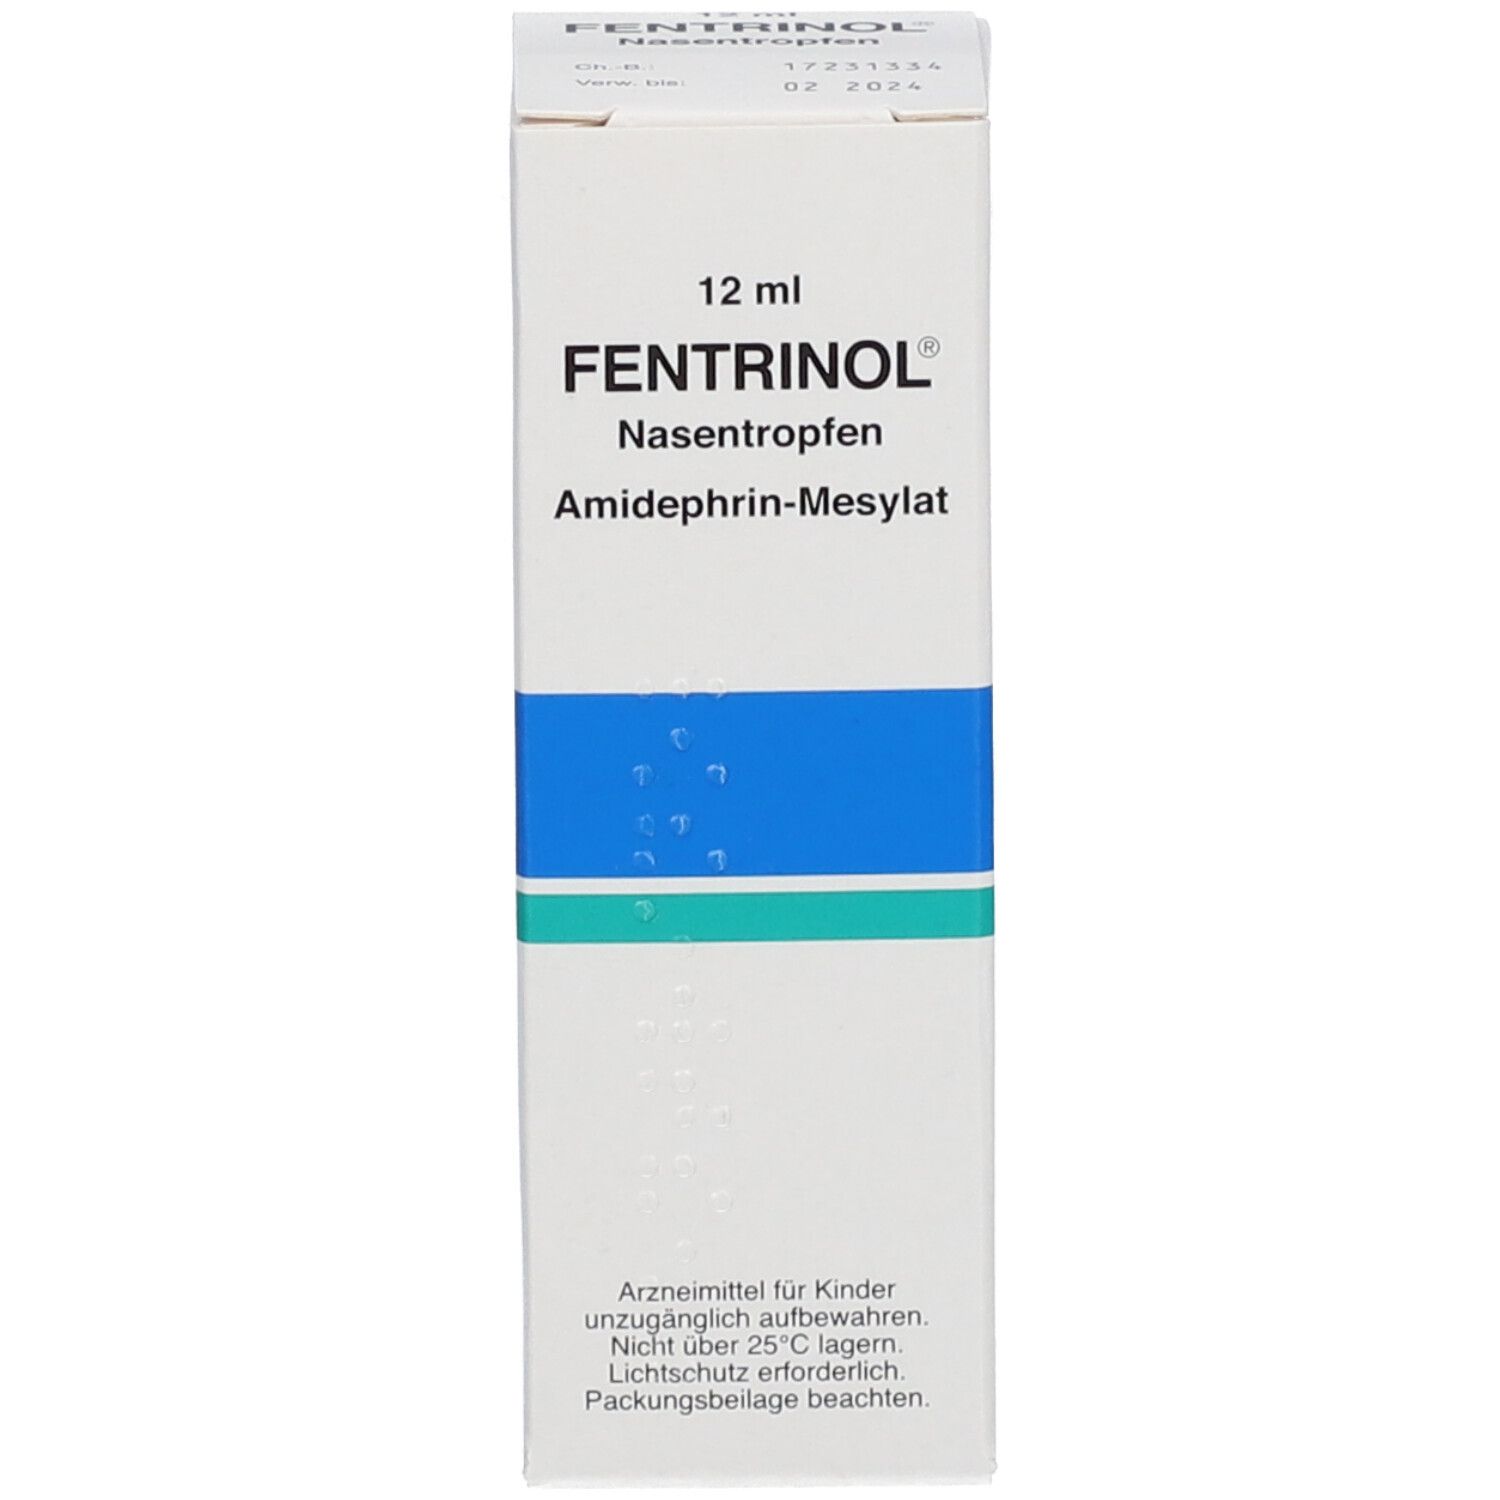 FENTRINOL® Nasentropfen